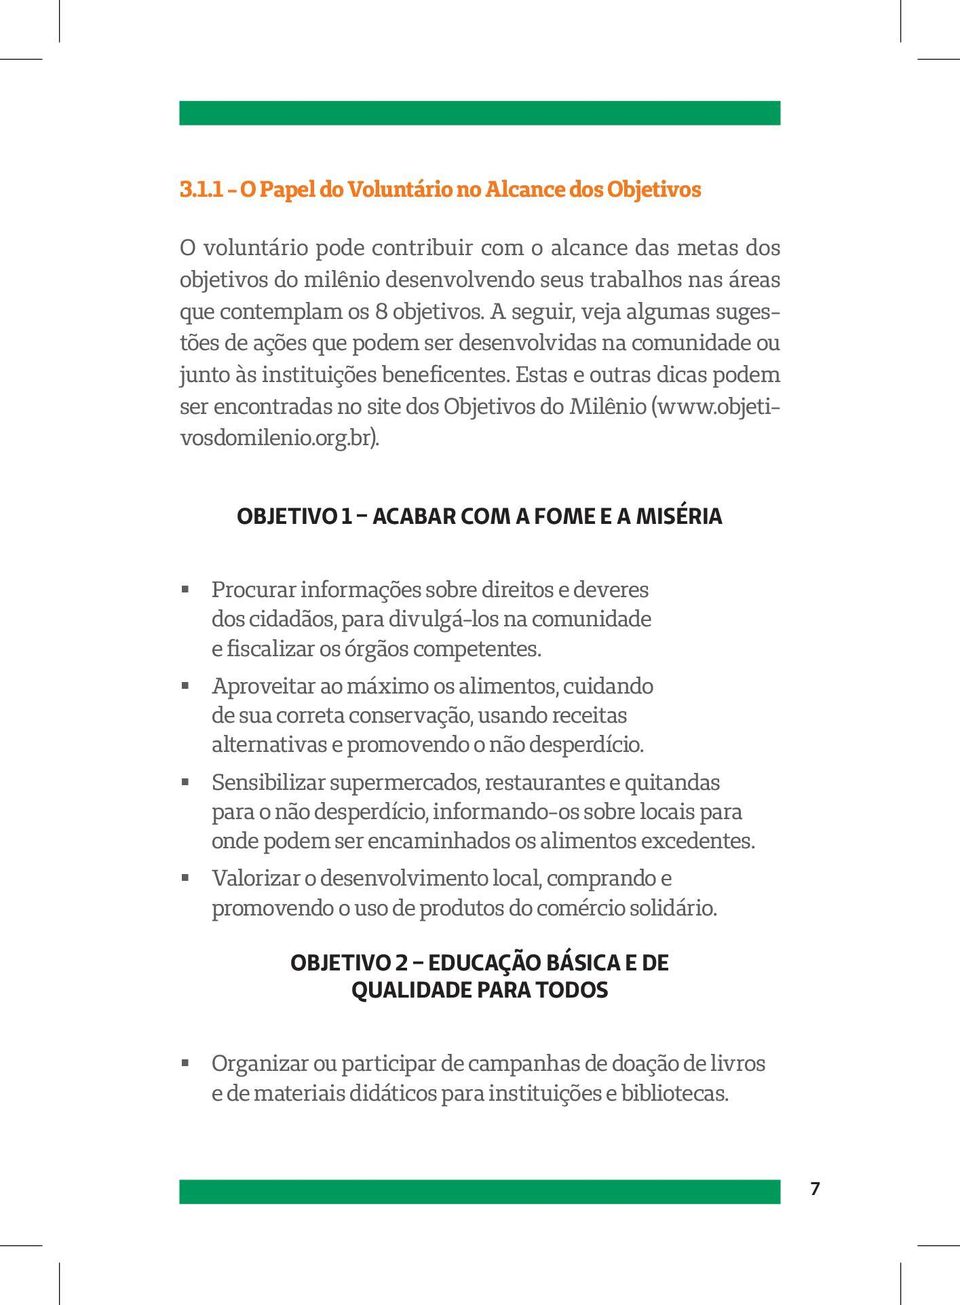 Estas e outras dicas podem ser encontradas no site dos Objetivos do Milênio (www.objetivosdomilenio.org.br).